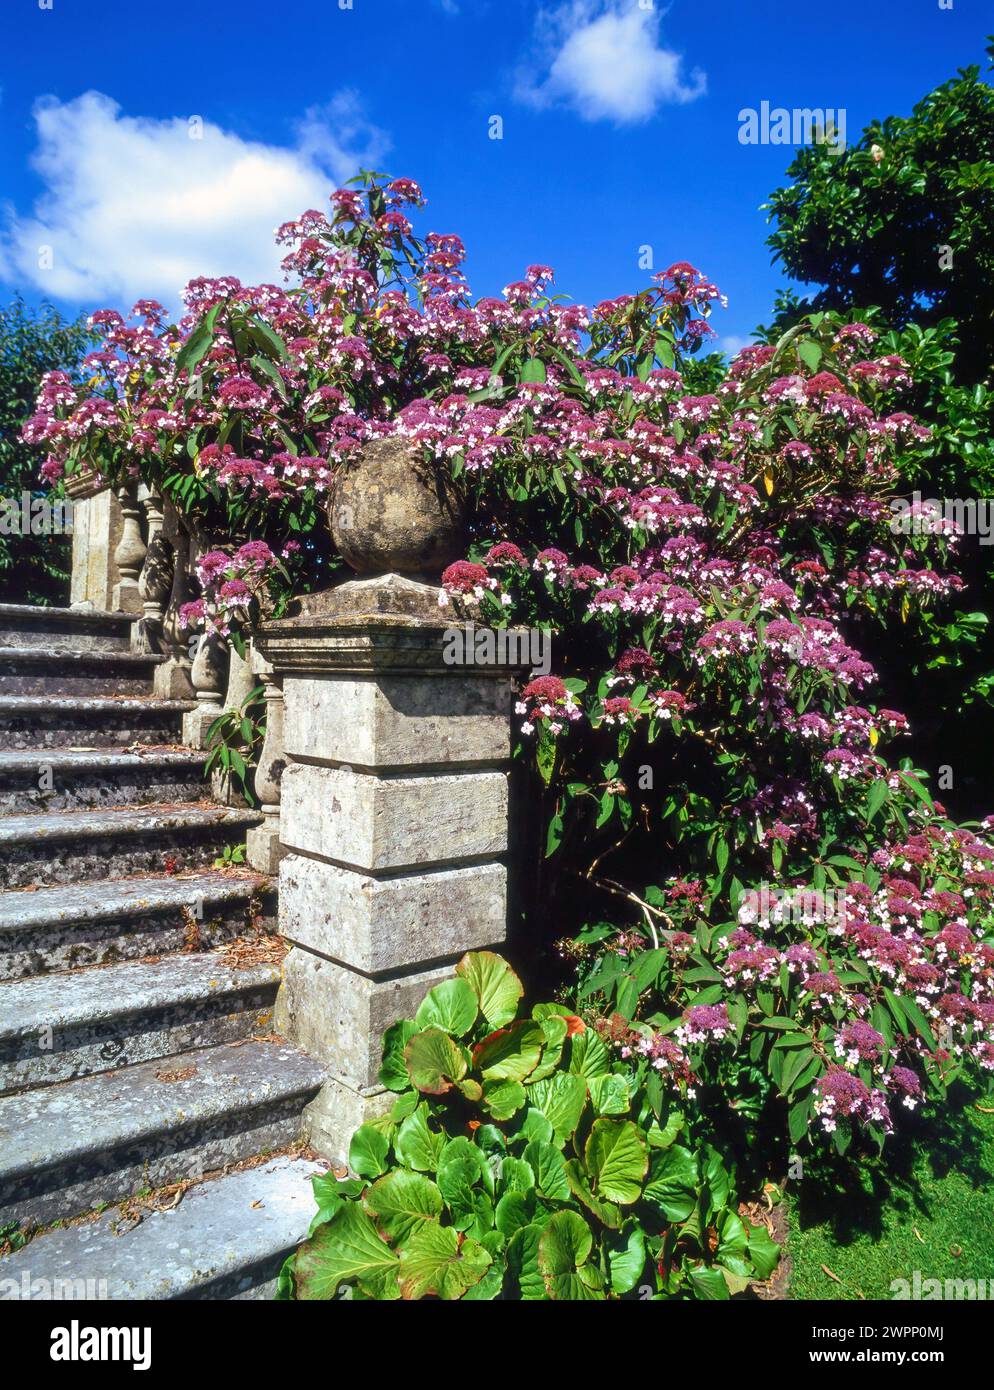 Hydrangea villosa 'Velvet and Lace' plante en pleine floraison et poussant par marches de jardin en pierre ornées avec balustrade dans le jardin anglais, Angleterre, Royaume-Uni Banque D'Images